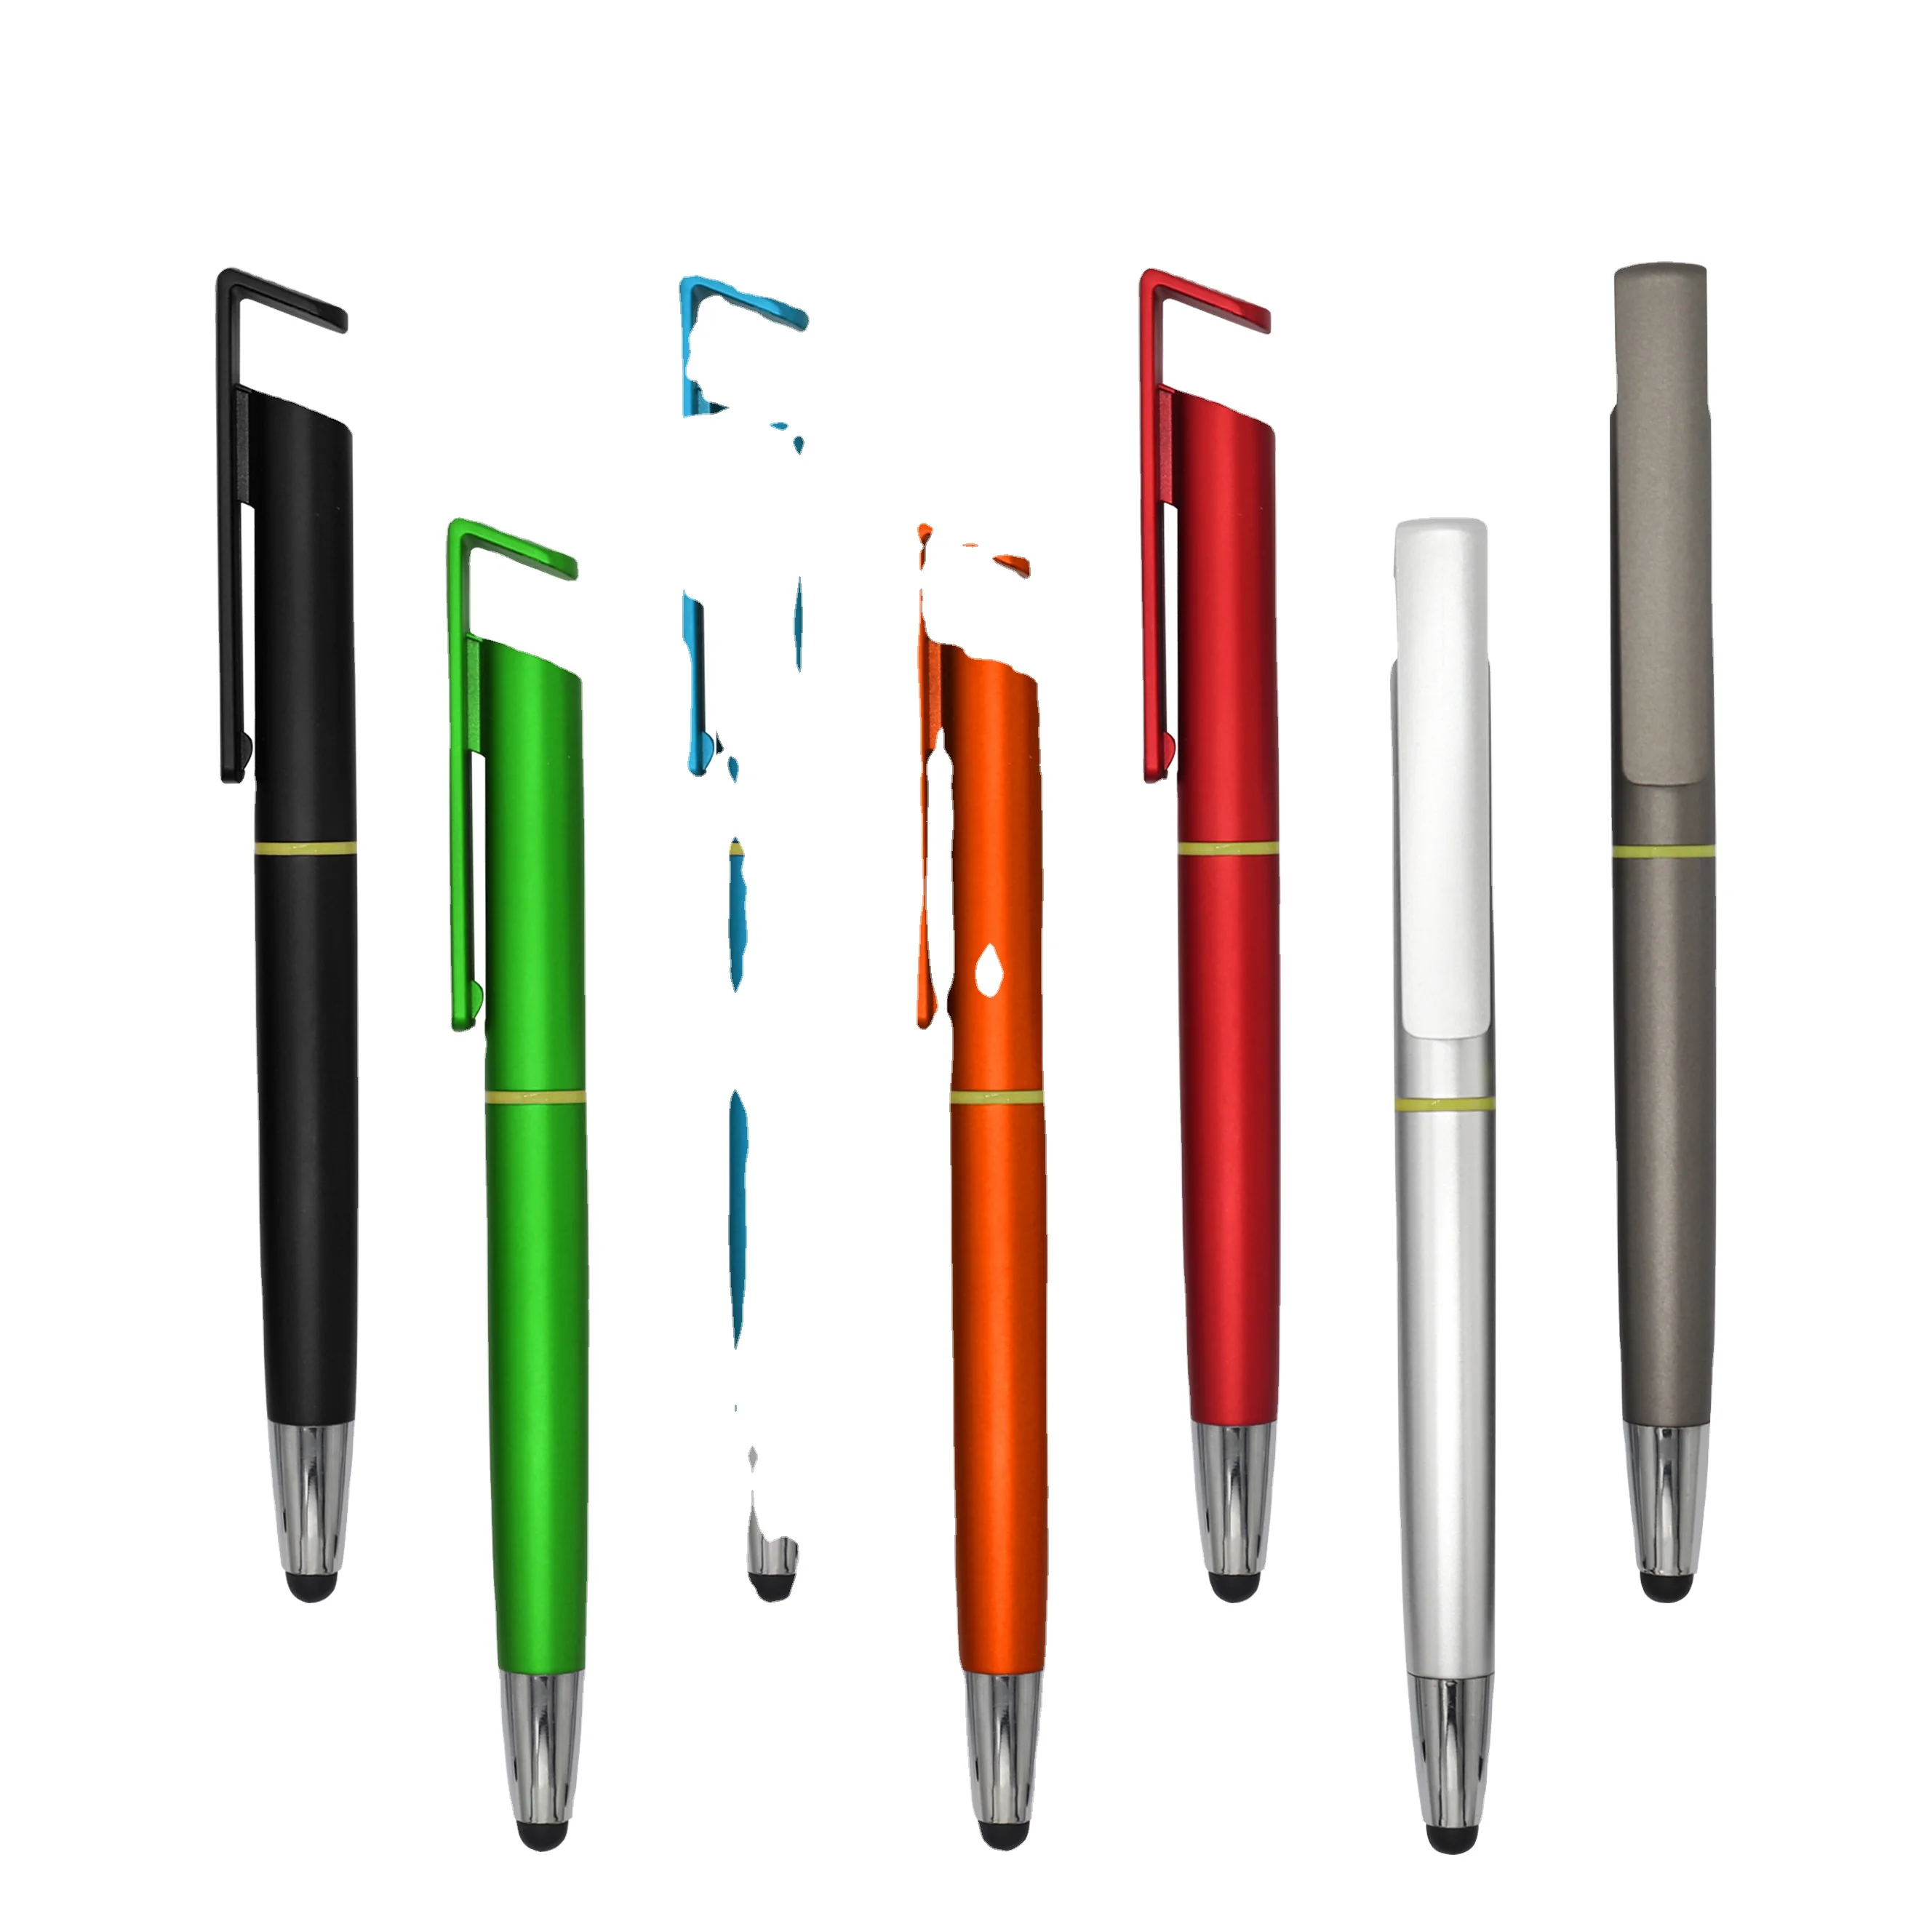 ライト付きペンとスタイラスawavo容量性スタイラスペン互換androidモバイルとスタイラスペン Buy ライトledとスタイラス付きペン Awavo容量性スタイラスペン互換 スタイラスペン付きandroidモバイル Product On Alibaba Com